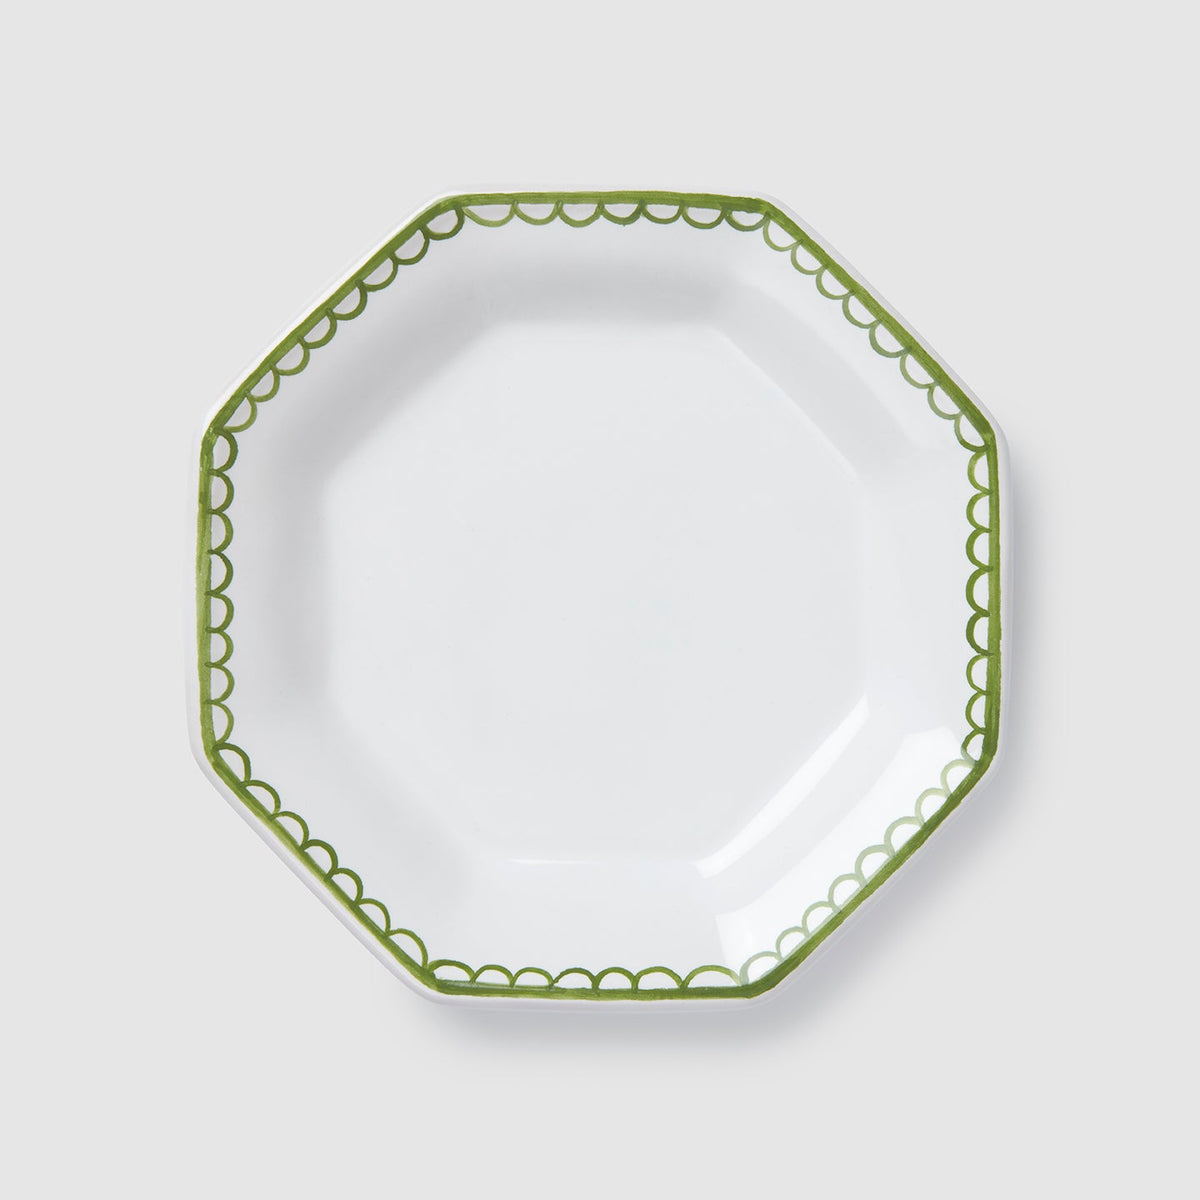 Octagonal Petite Plate, Green